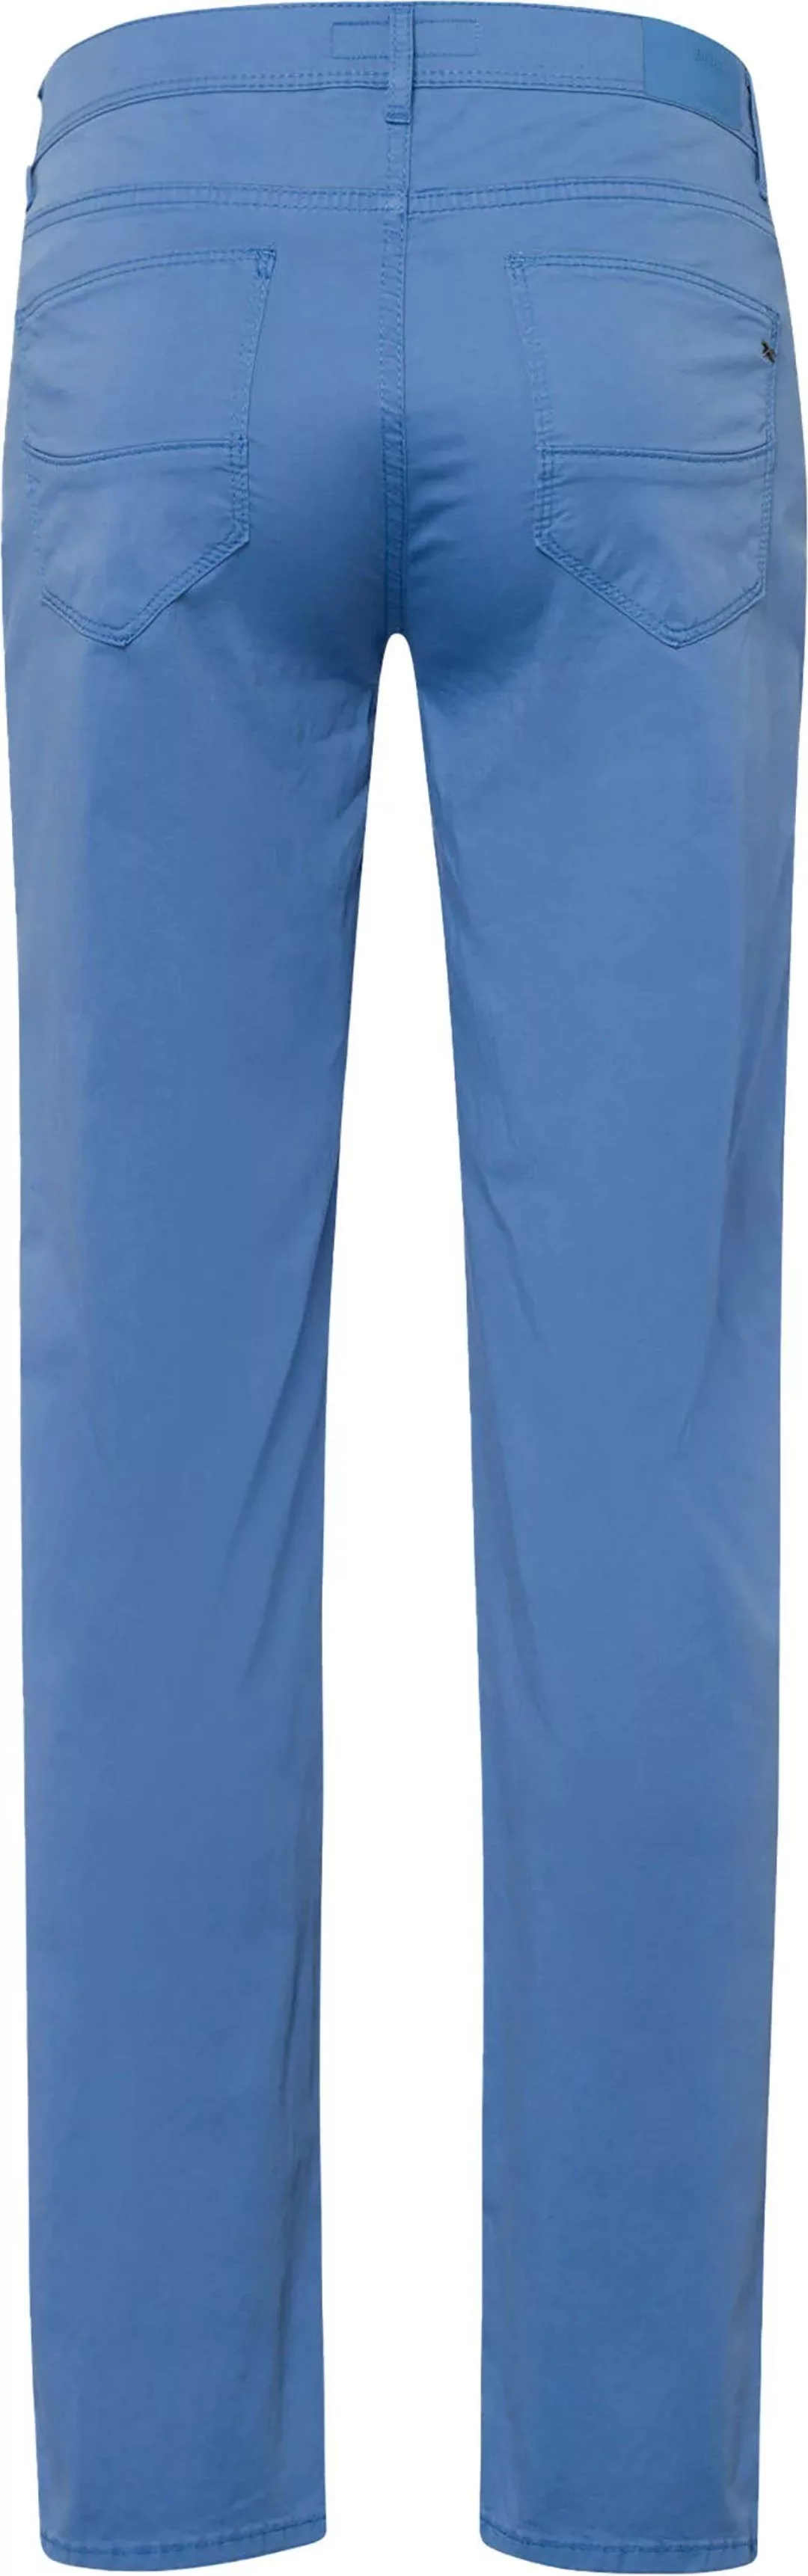 Brax Cadiz Hose Blau - Größe W 33 - L 32 günstig online kaufen